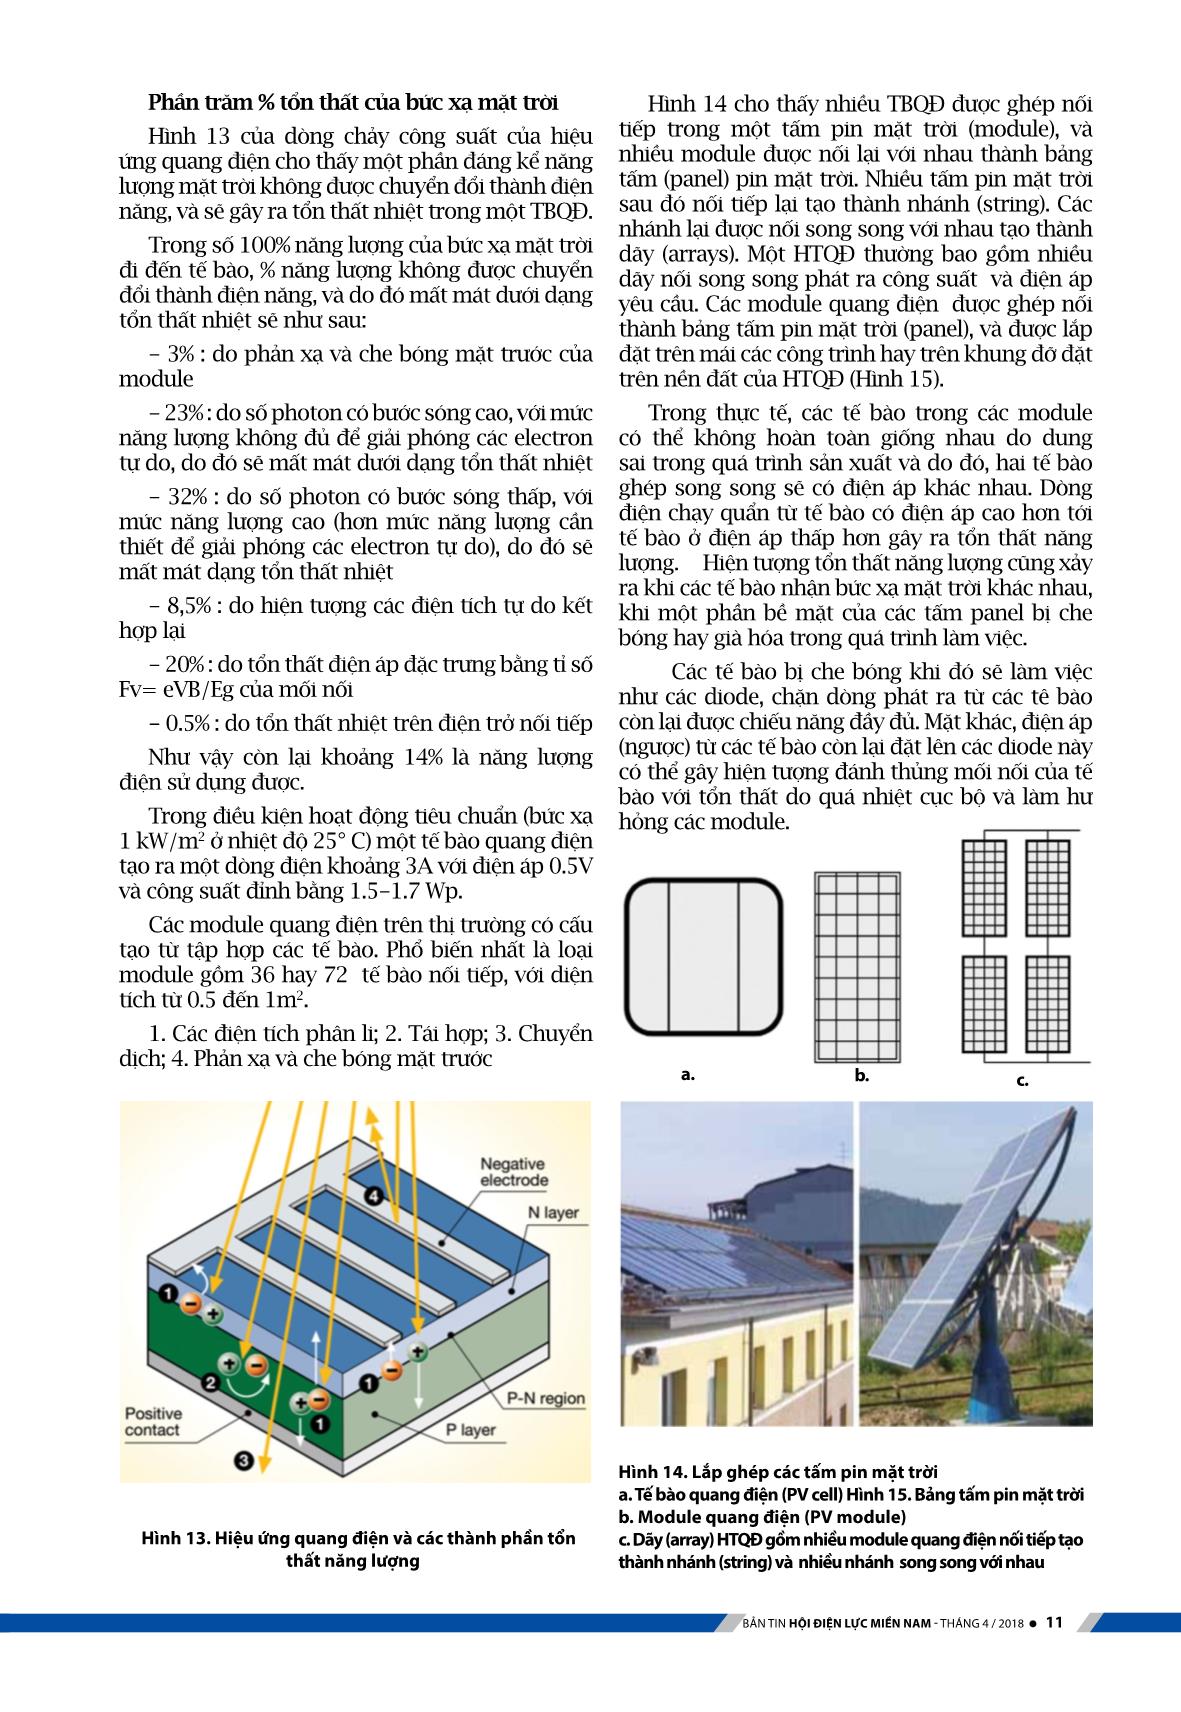 Kỹ thuật hệ thống điện mặt trời với công nghệ quang điện trang 7